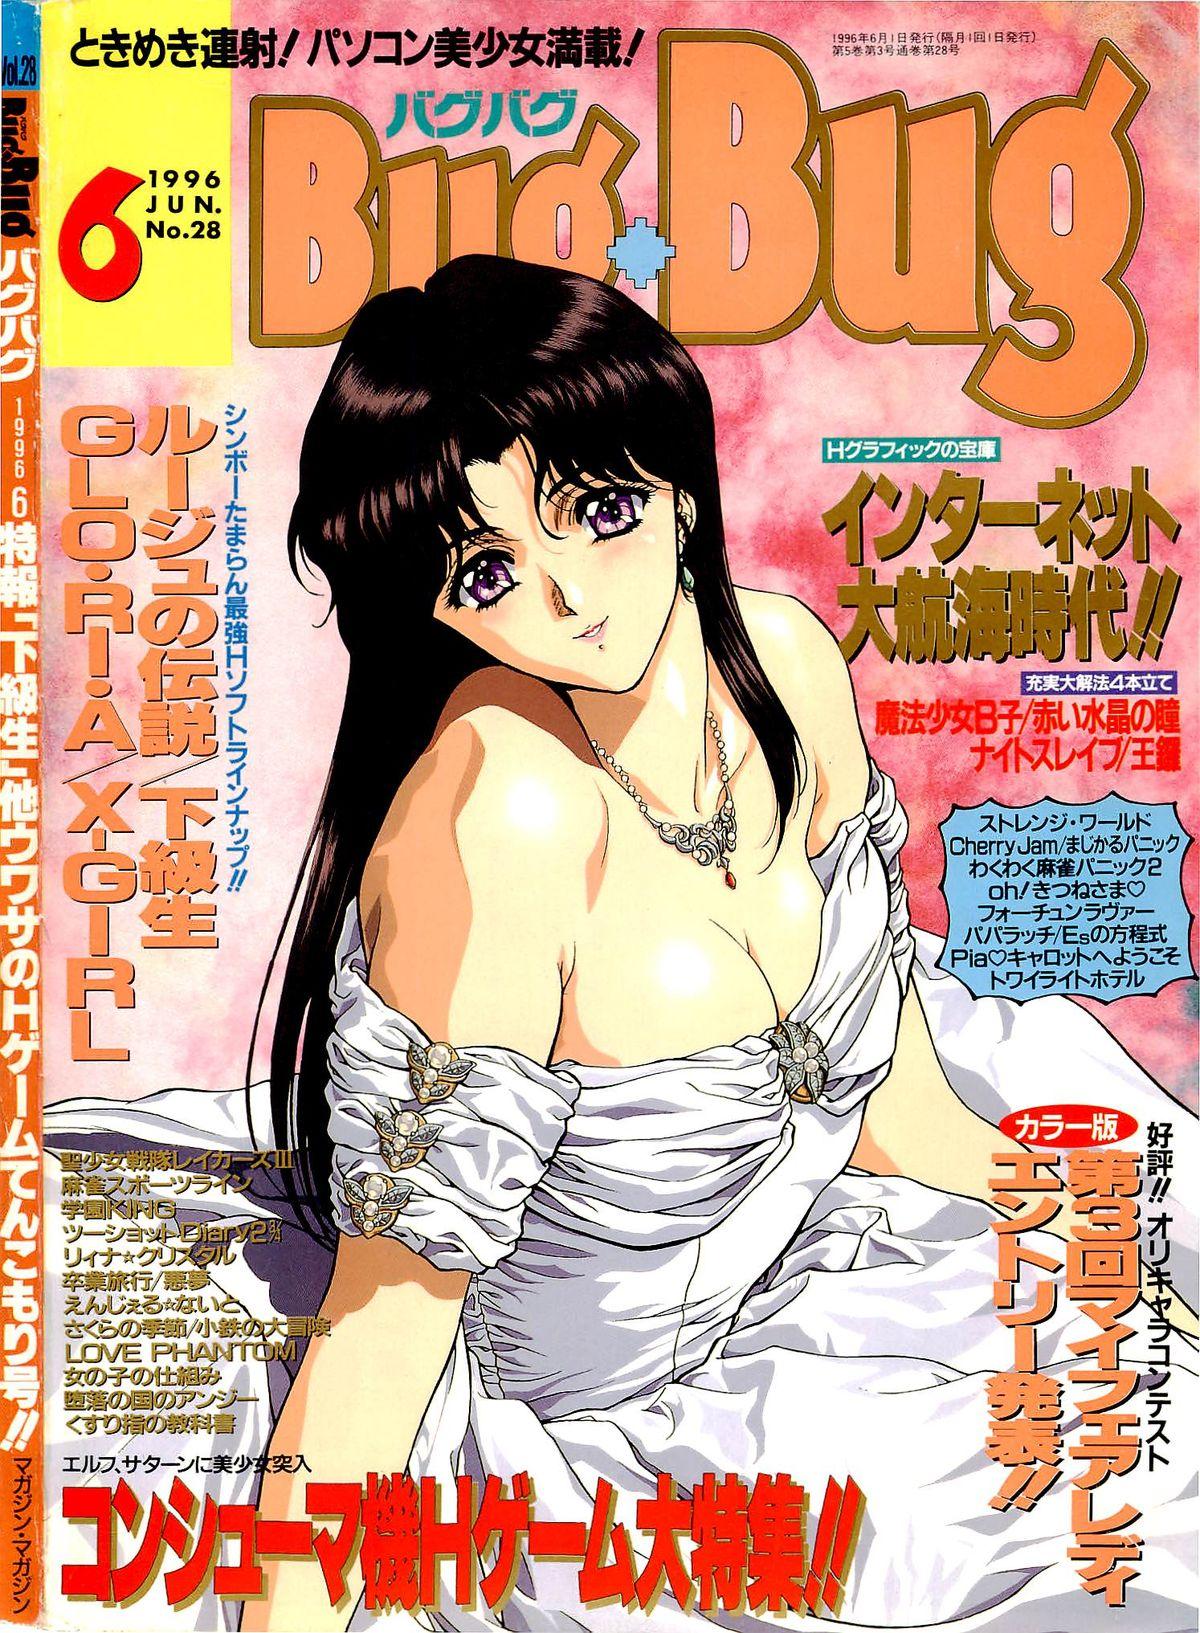 Piroca BugBug 1996-06 Vol. 28 Girl Girl - Page 1